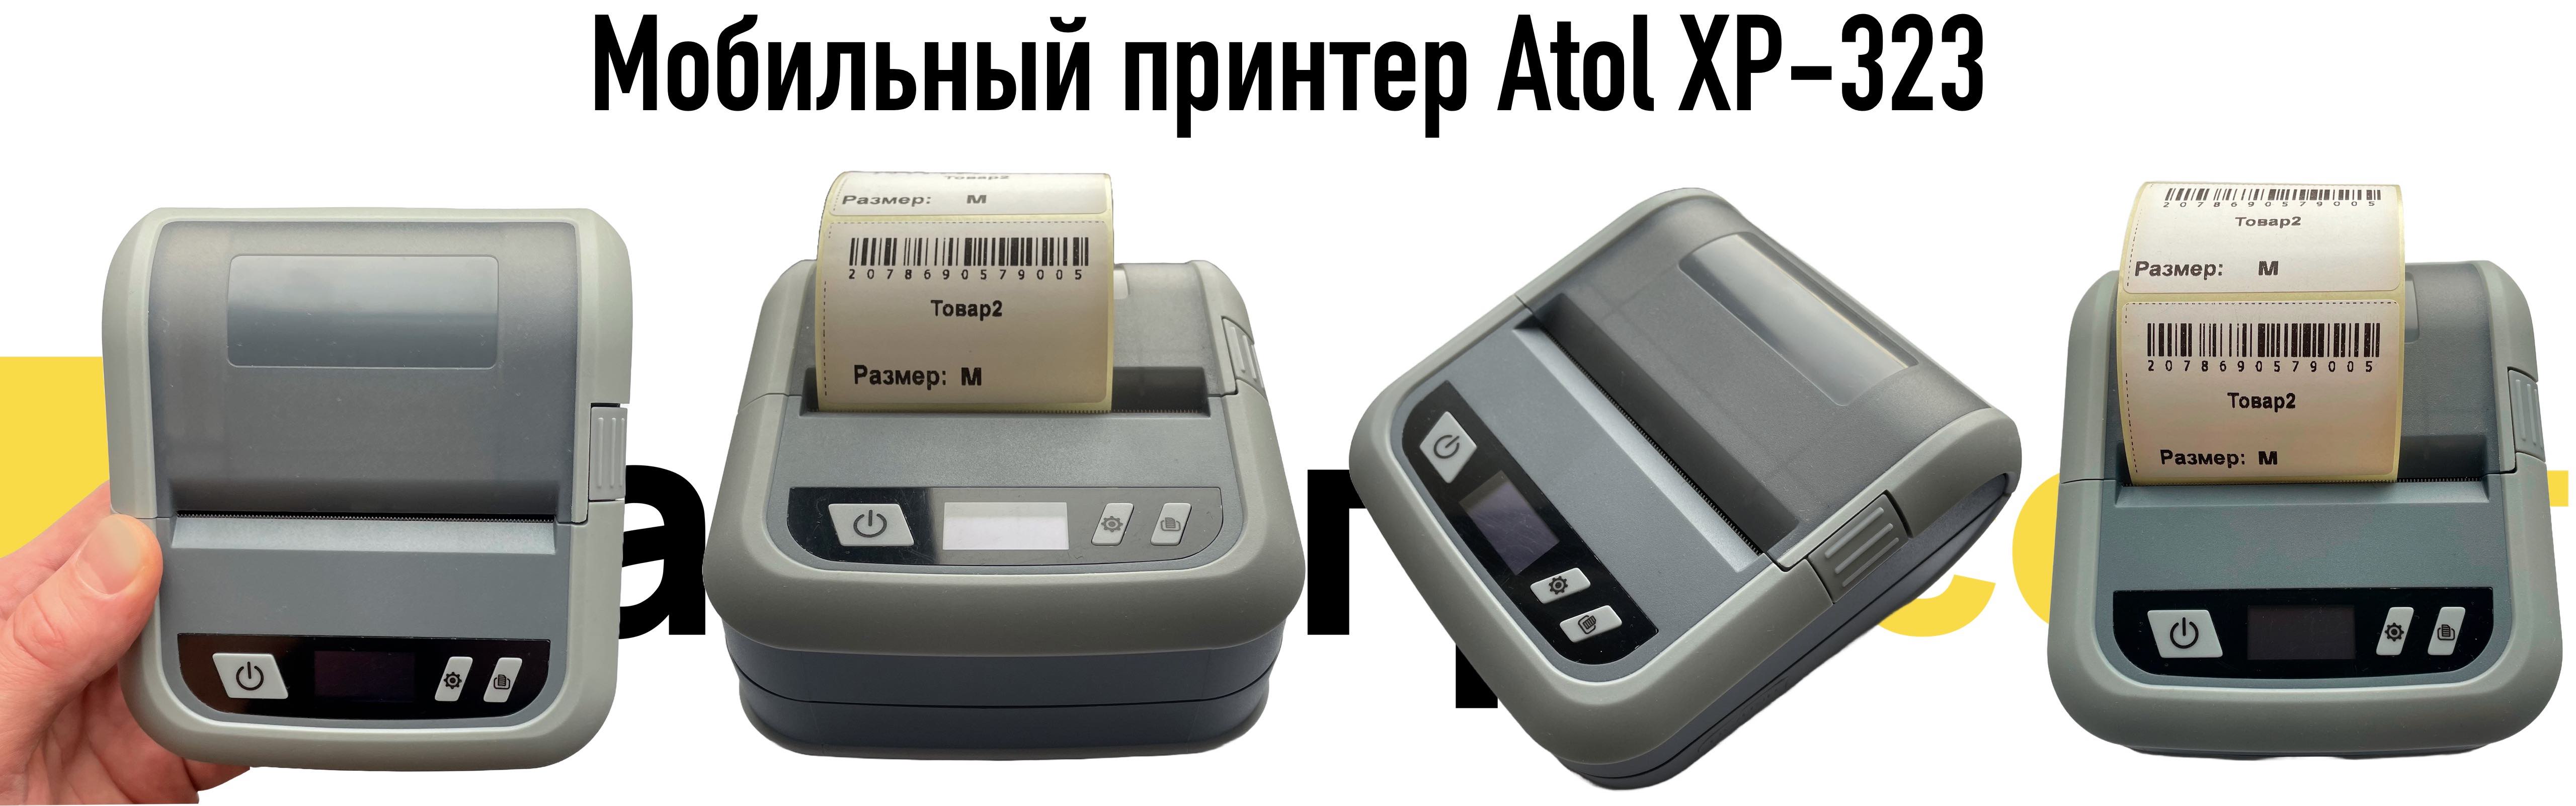 Мобильный принтер Atol XP-323